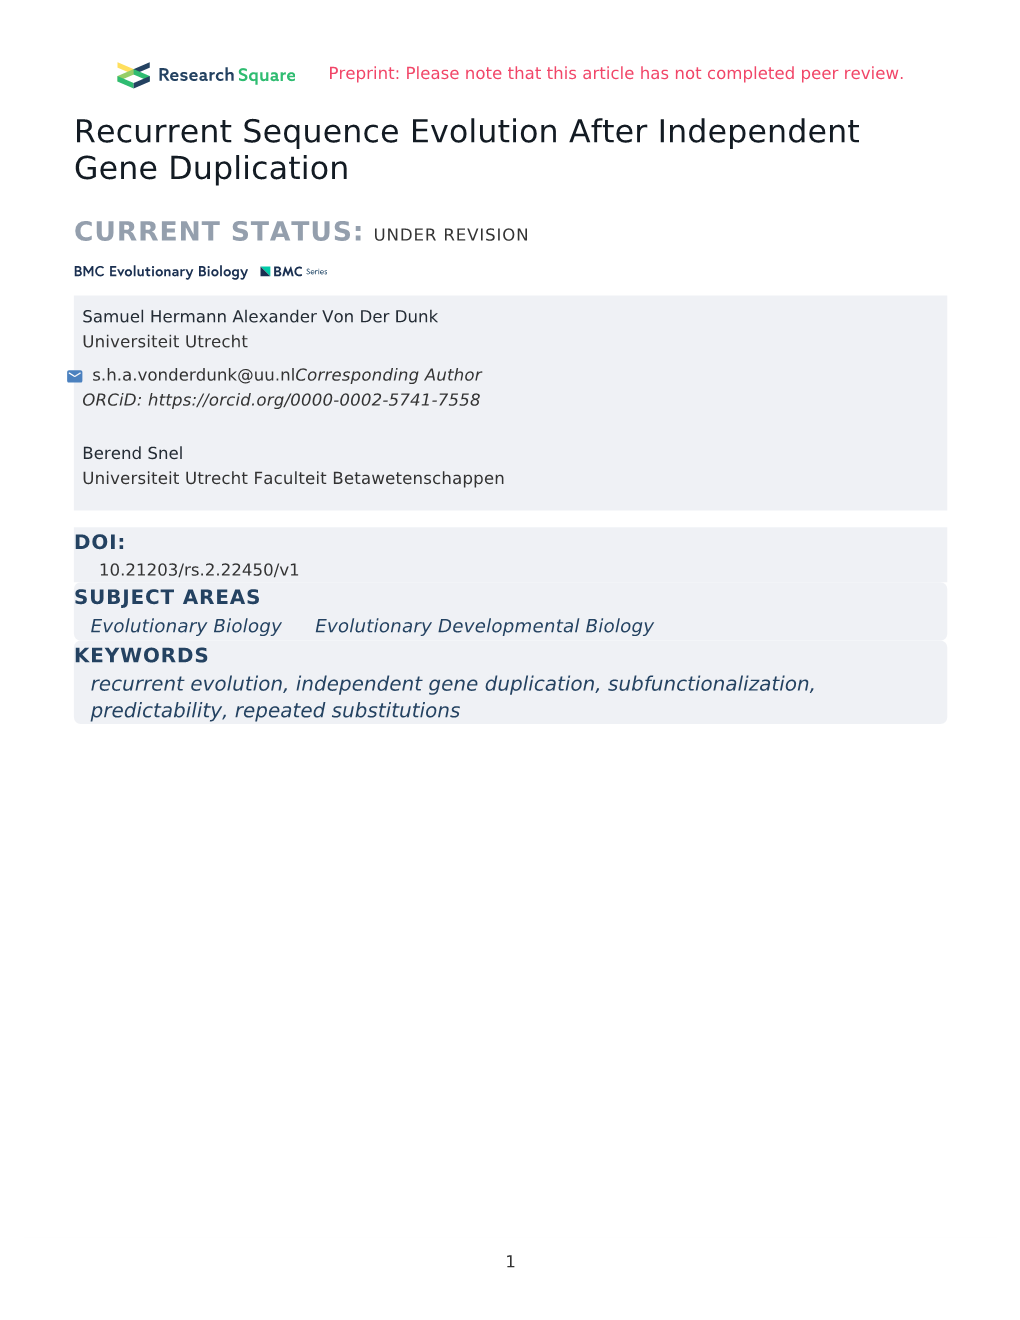 Recurrent Sequence Evolution After Independent Gene Duplication